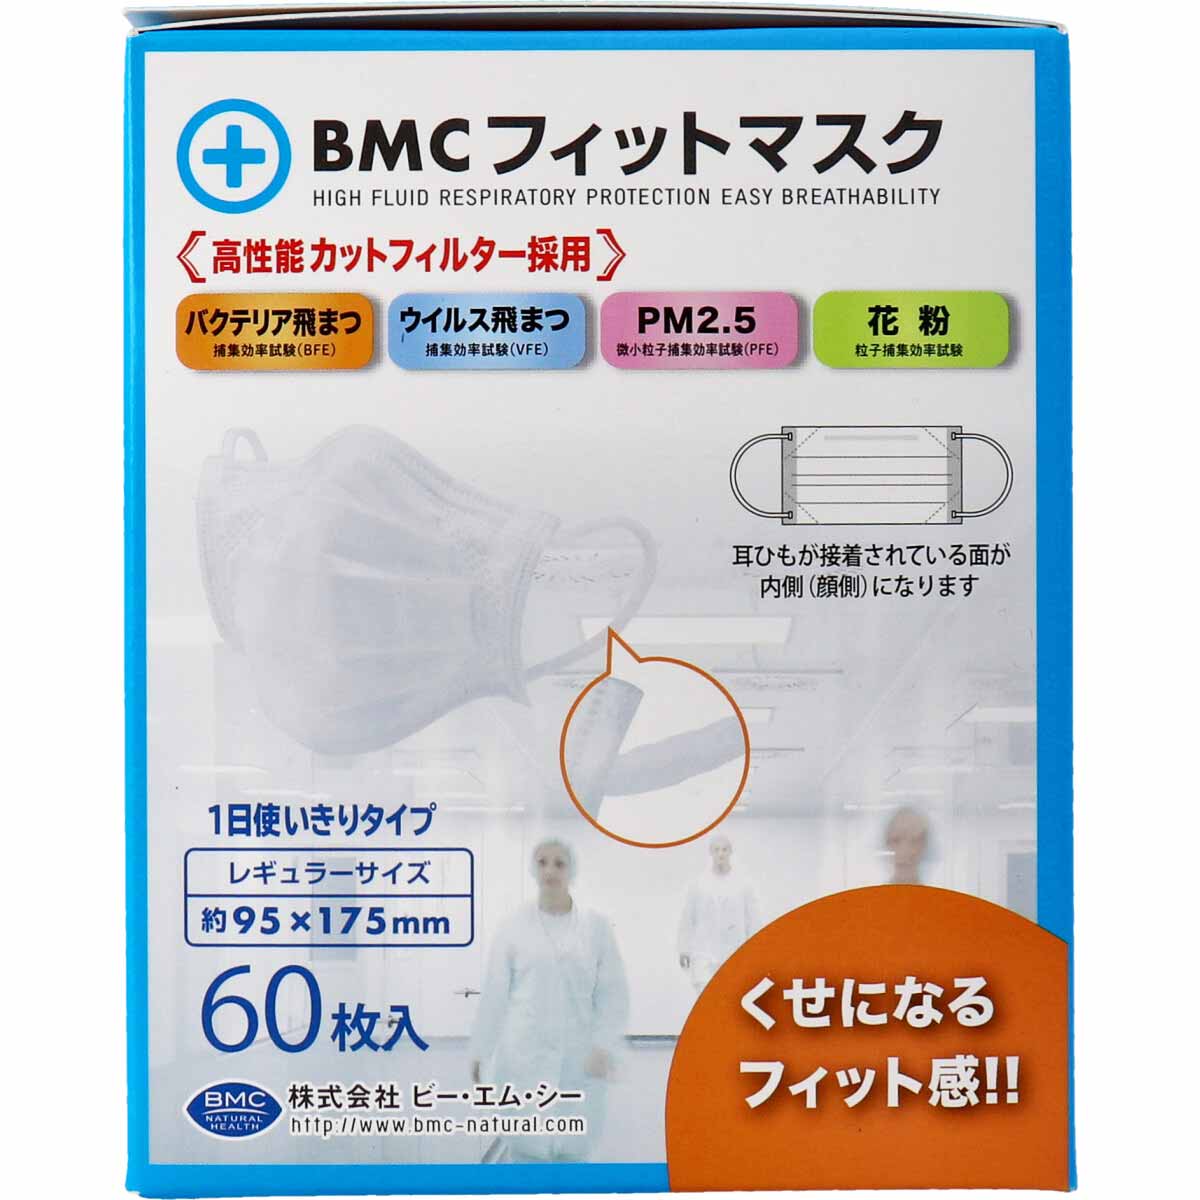 BMC マスク BMC フィットマスク 1日使い切りタイプ レギュラーサイズ 60枚入 5個セット